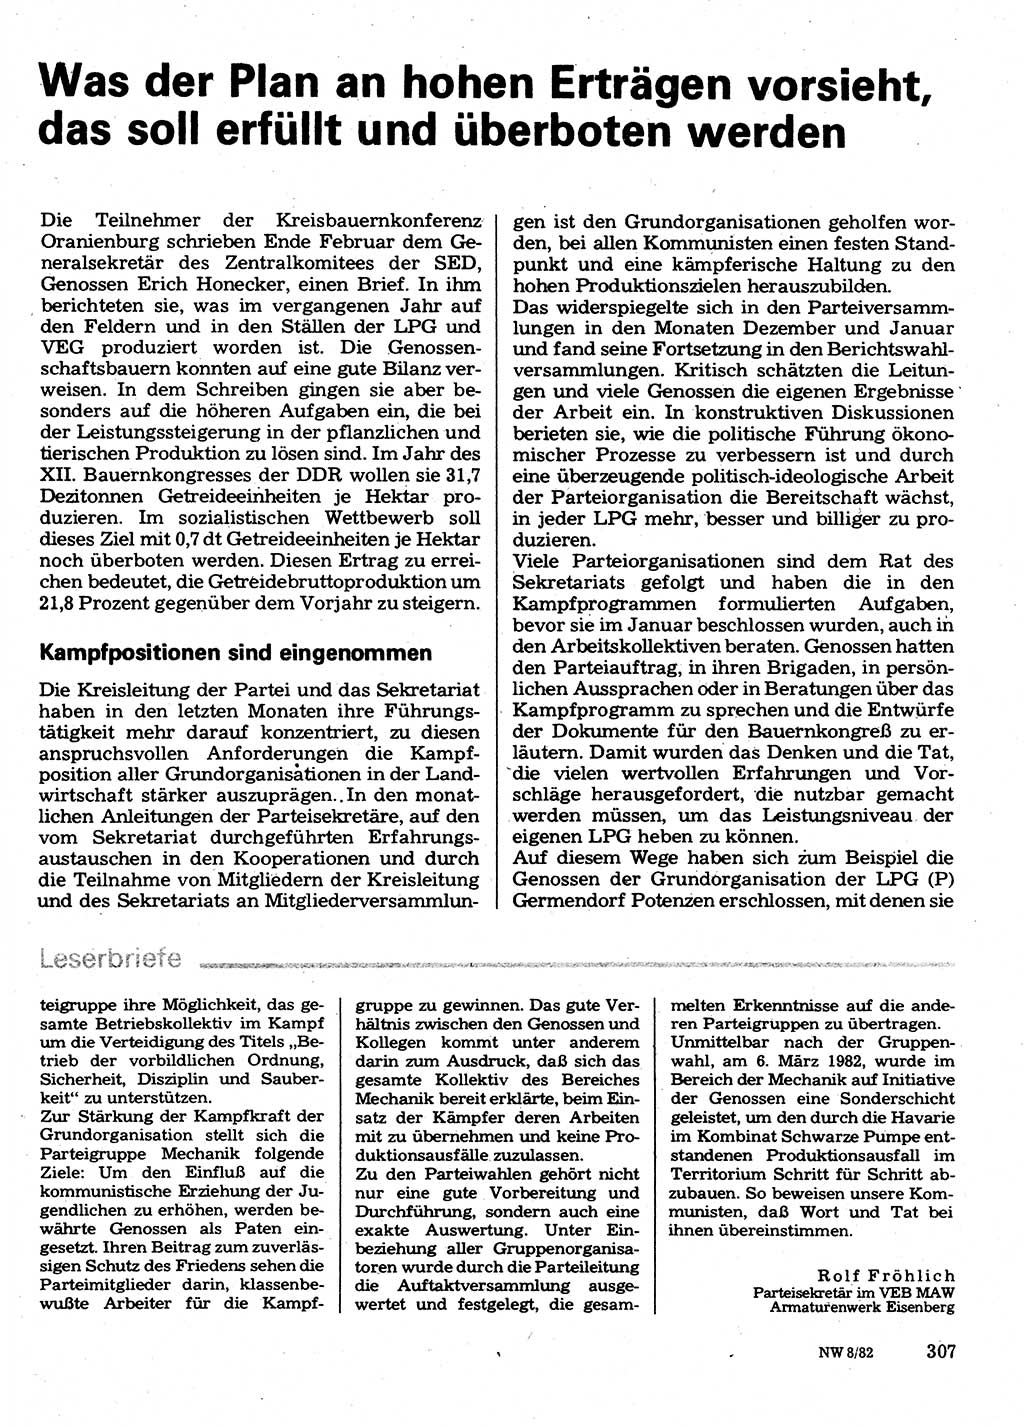 Neuer Weg (NW), Organ des Zentralkomitees (ZK) der SED (Sozialistische Einheitspartei Deutschlands) für Fragen des Parteilebens, 37. Jahrgang [Deutsche Demokratische Republik (DDR)] 1982, Seite 307 (NW ZK SED DDR 1982, S. 307)